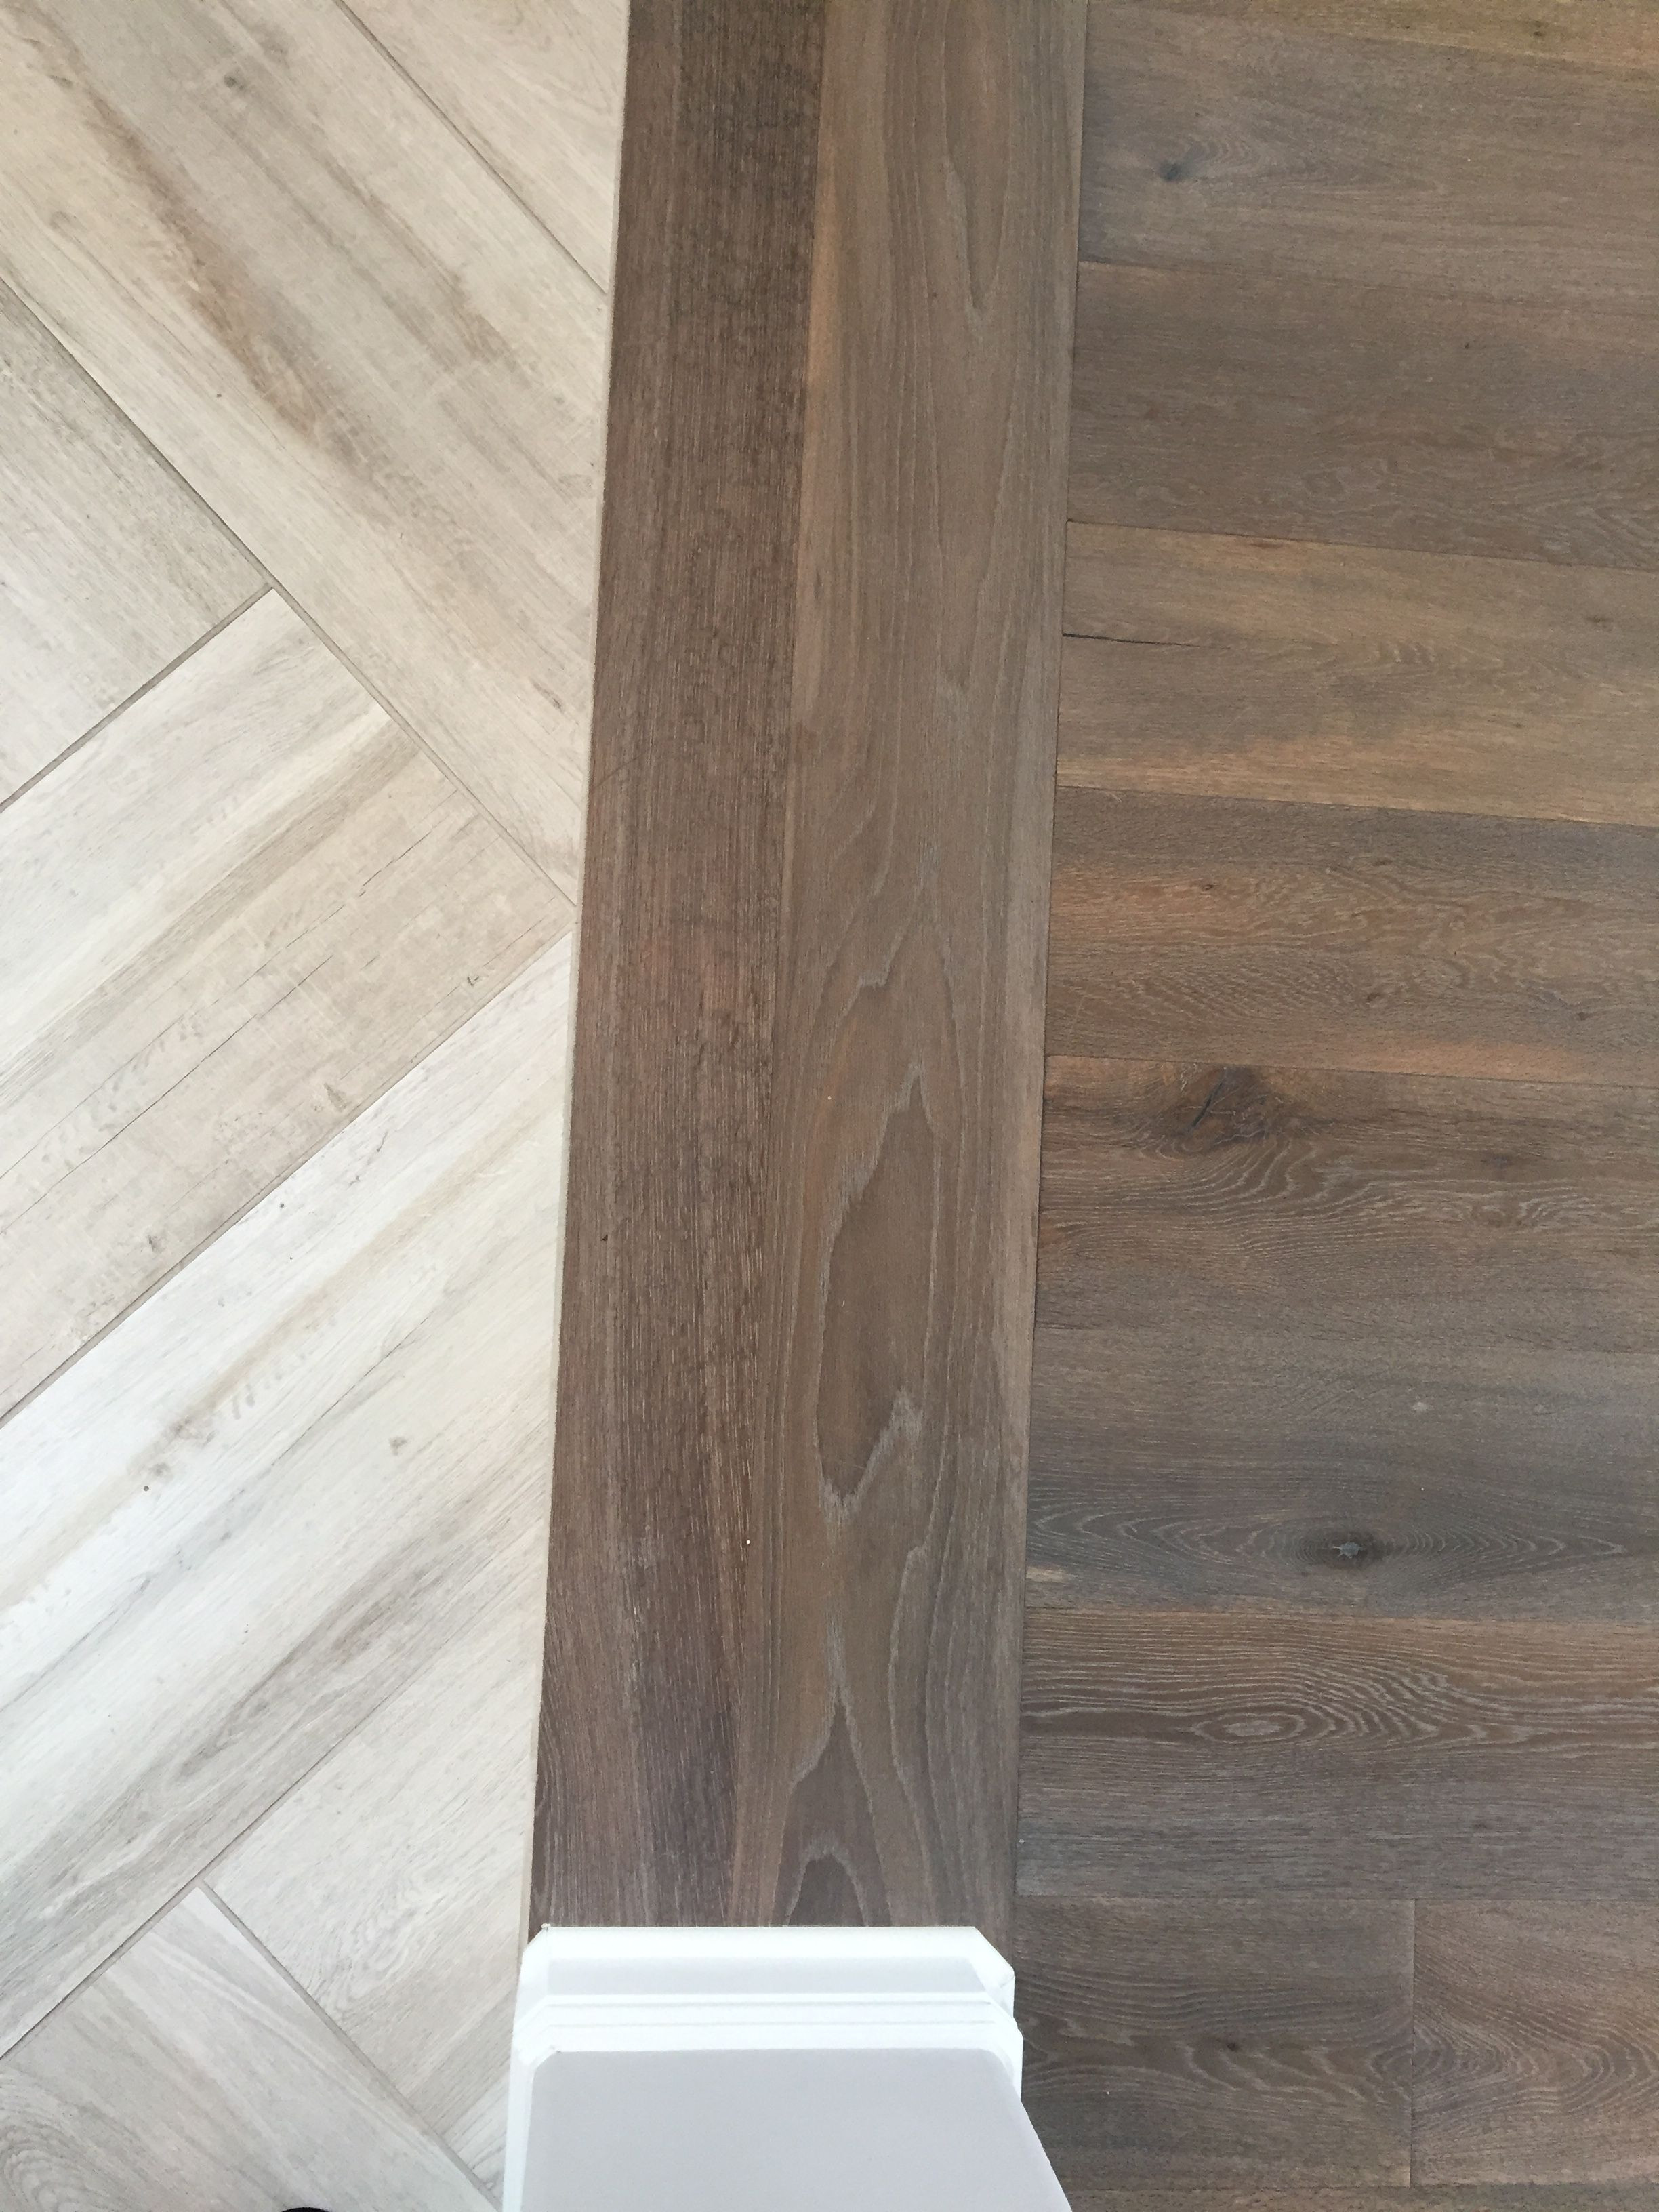 19 attractive Hardwood Floor Options 2024 free download hardwood floor options of floor transition laminate to herringbone tile pattern model in floor transition laminate to herringbone tile pattern